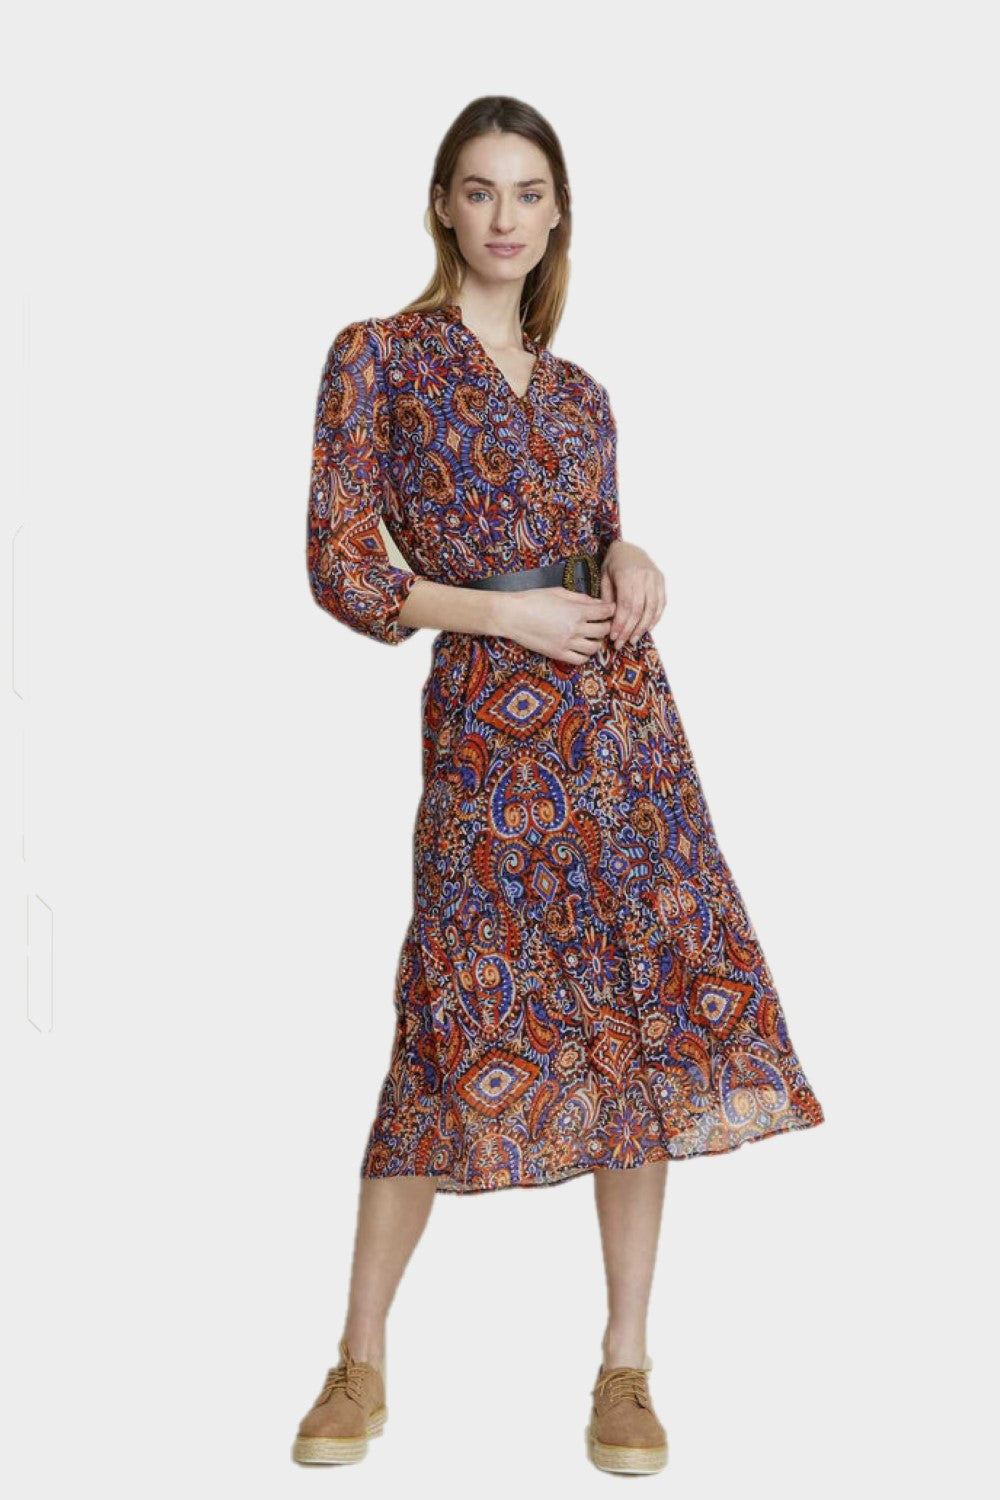 שמלת פייזלי לנשים הדפס אתני RENE DERHY Vendome online | ונדום .